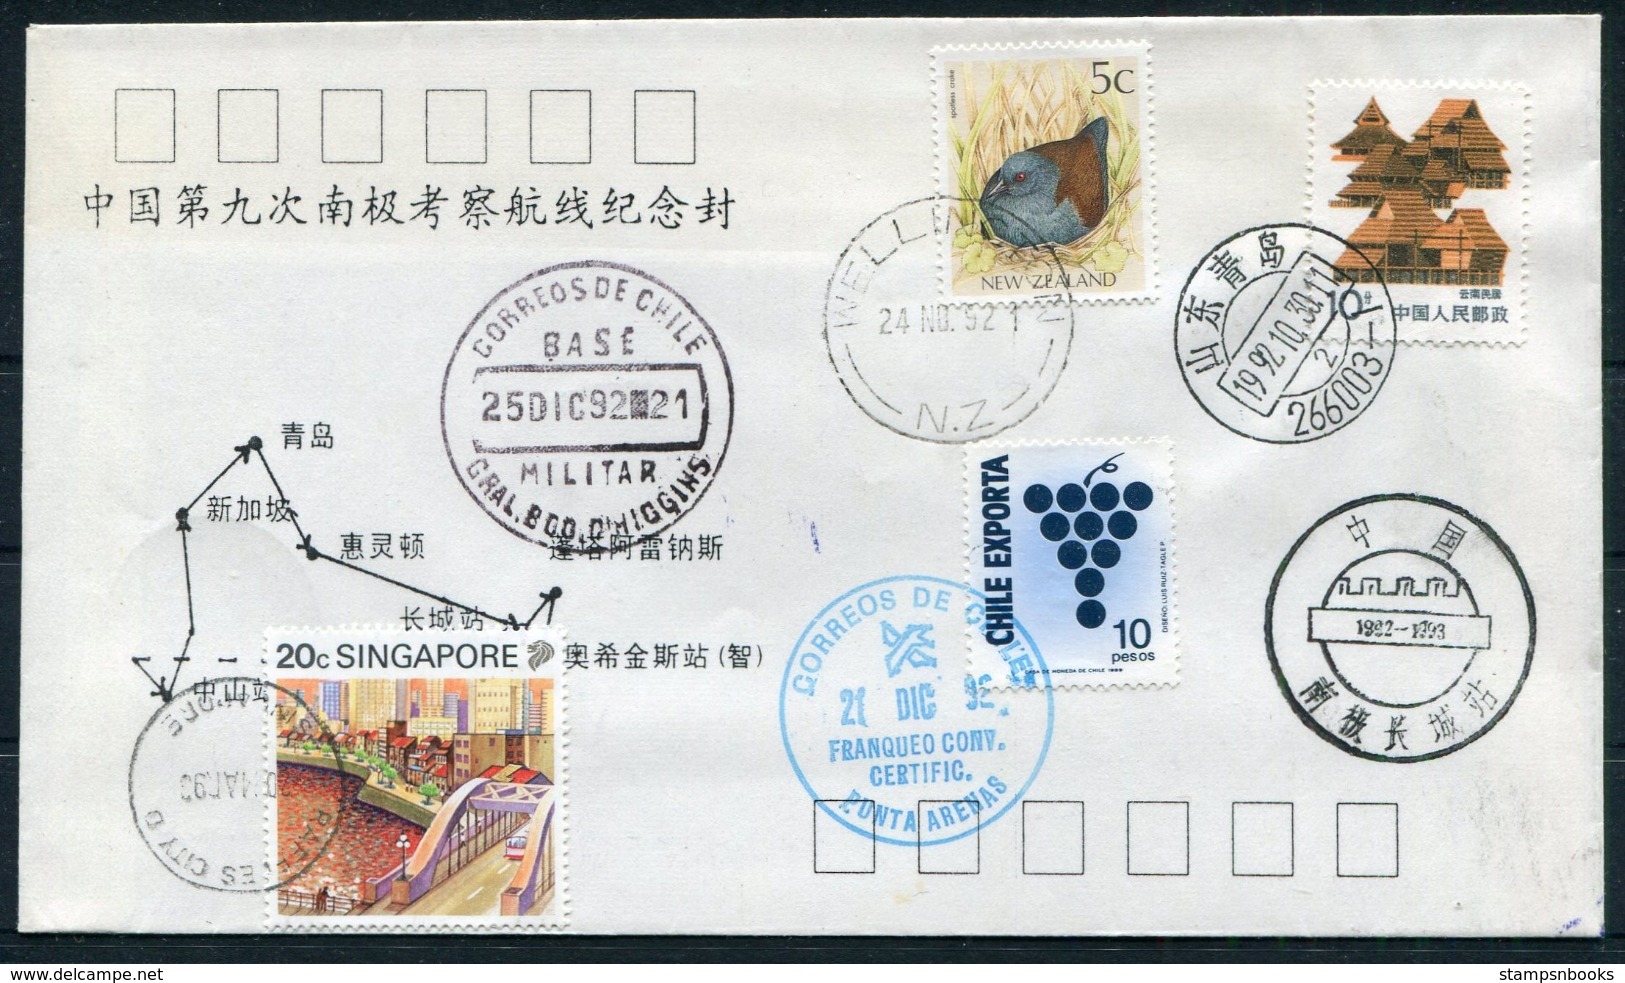 1992 China Singapore (Raffles City) Chile (O'Higgins) New Zealand, Korea, Australia (Davis) Antarctica Polar Expedition - Covers & Documents